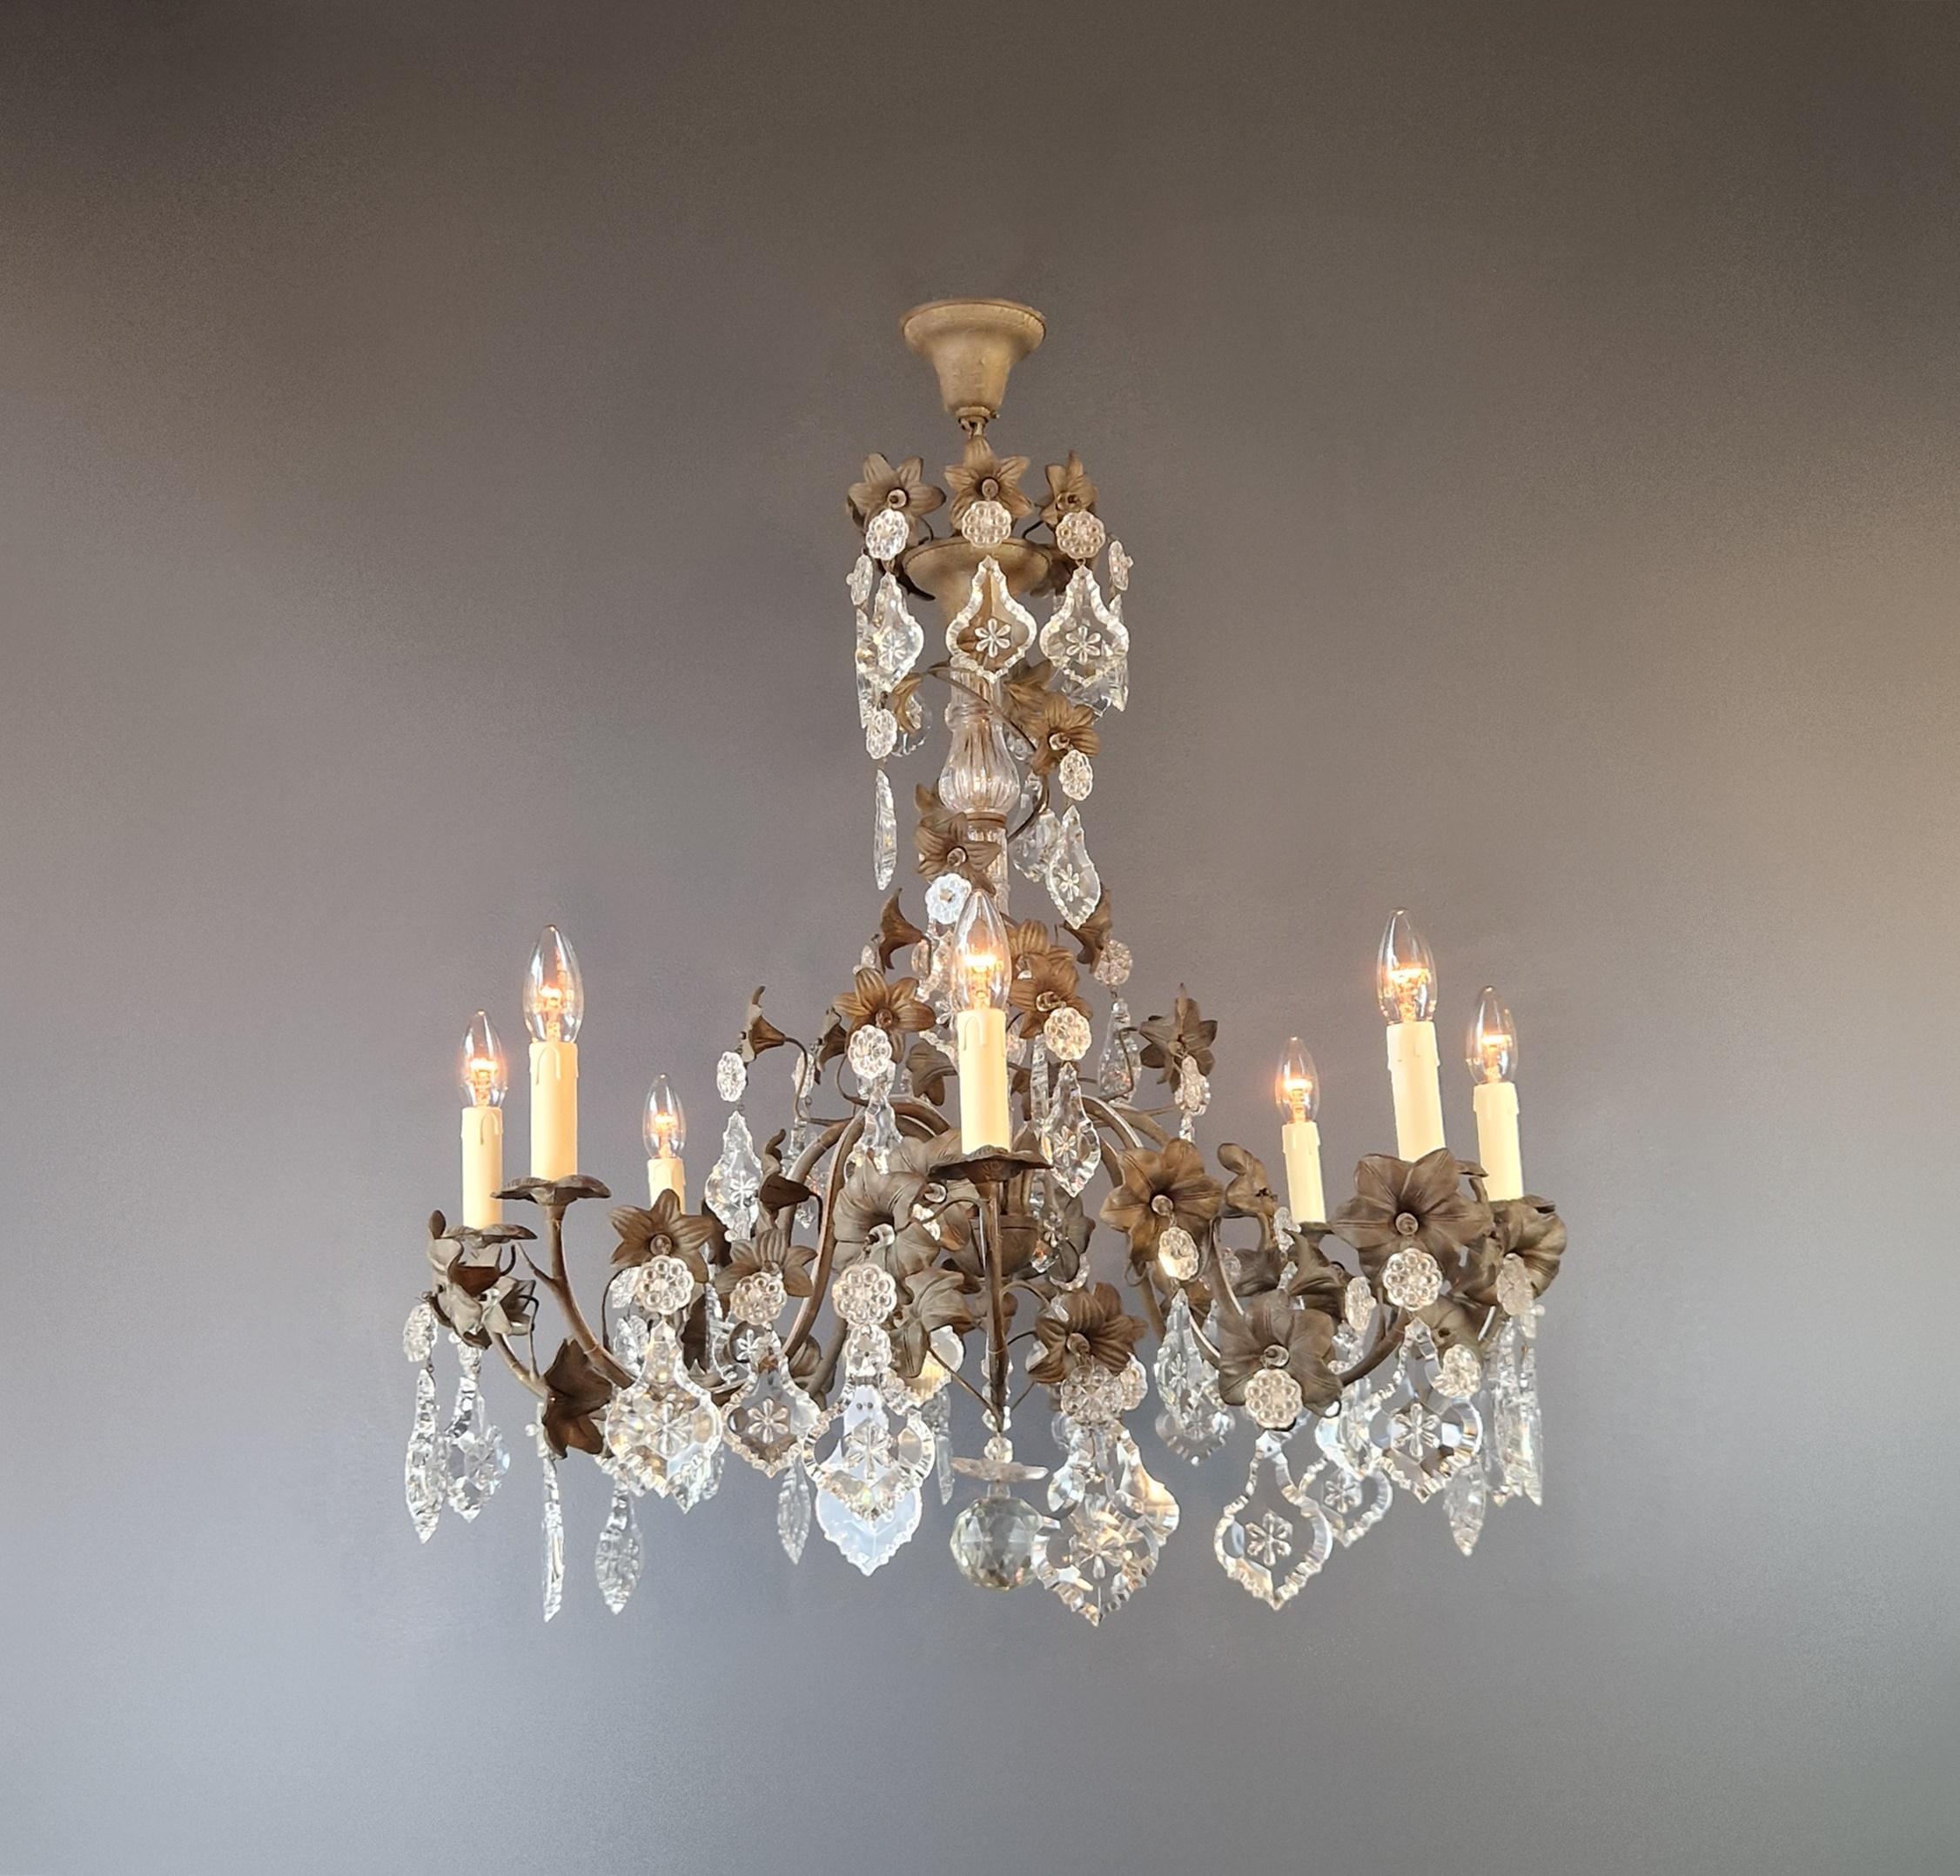 Italian Brass Crystal Chandelier Antique Ceiling Lamp Lustre Art Nouveau Lamp  For Sale